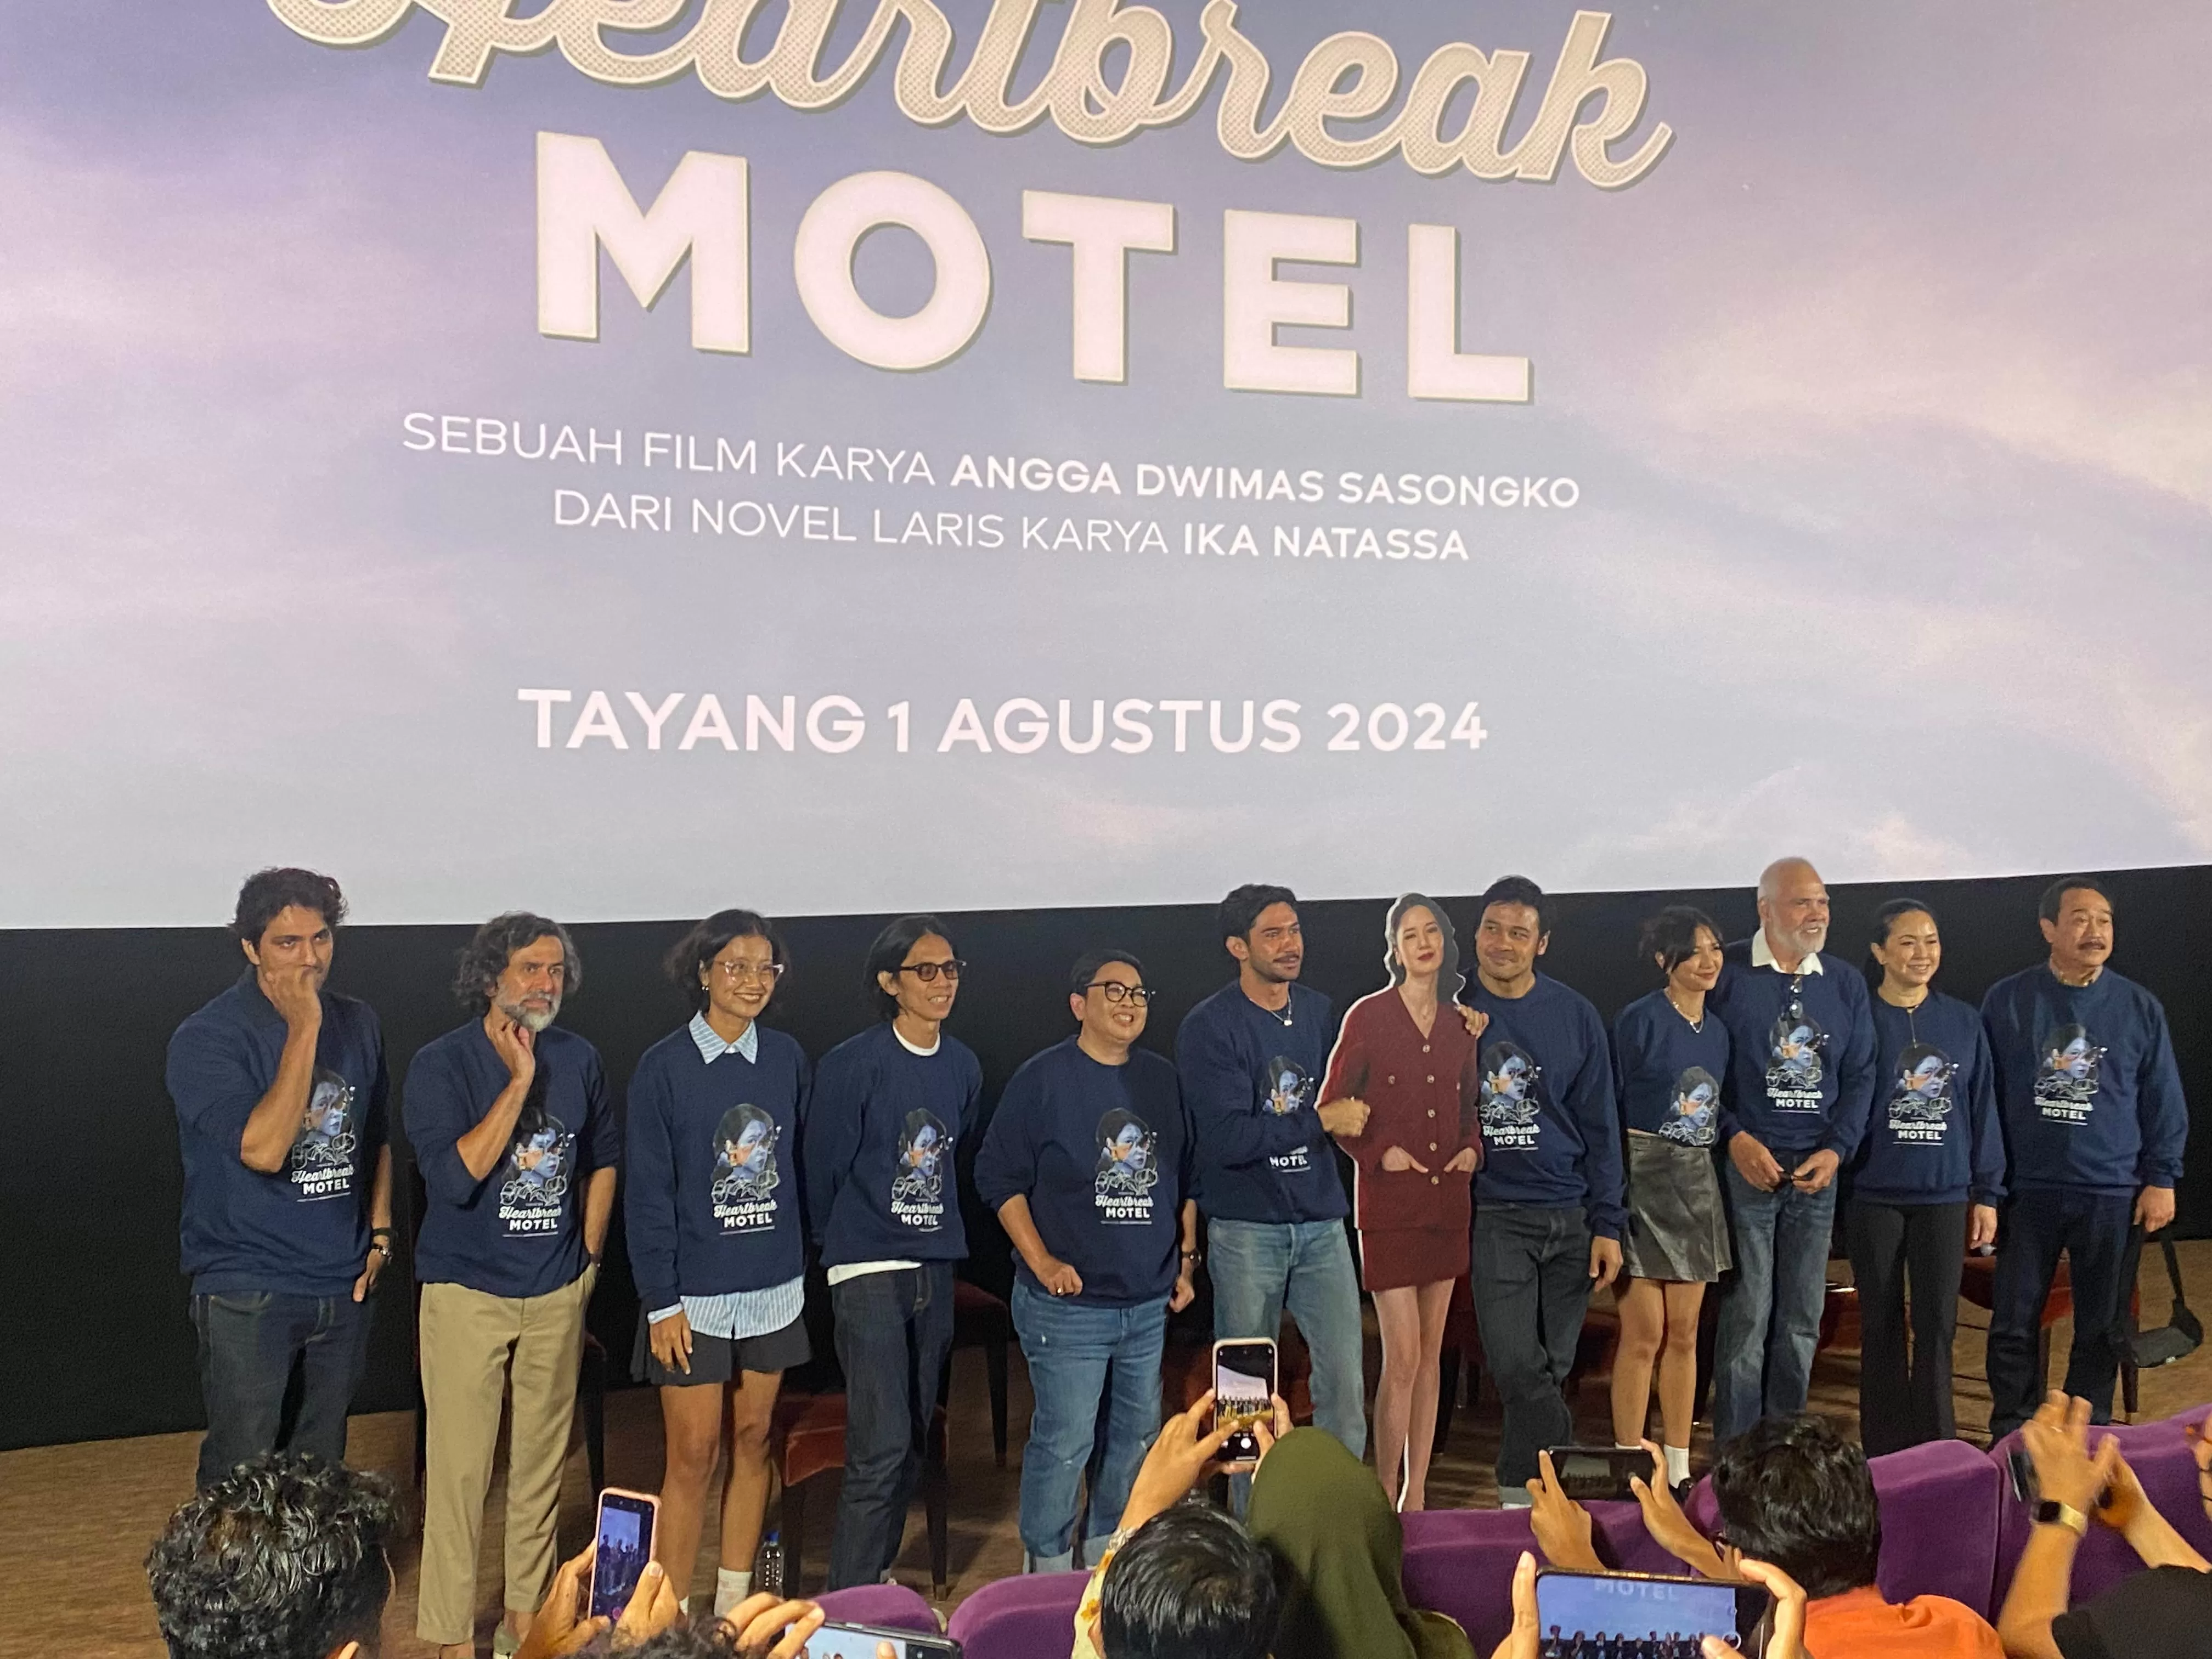 Peluncuran teaser video dan poster "Heartbreak Motel" di Jakarta, Jumat (28/6/2024).  (Akurat.co/Nuzulul Karamah )